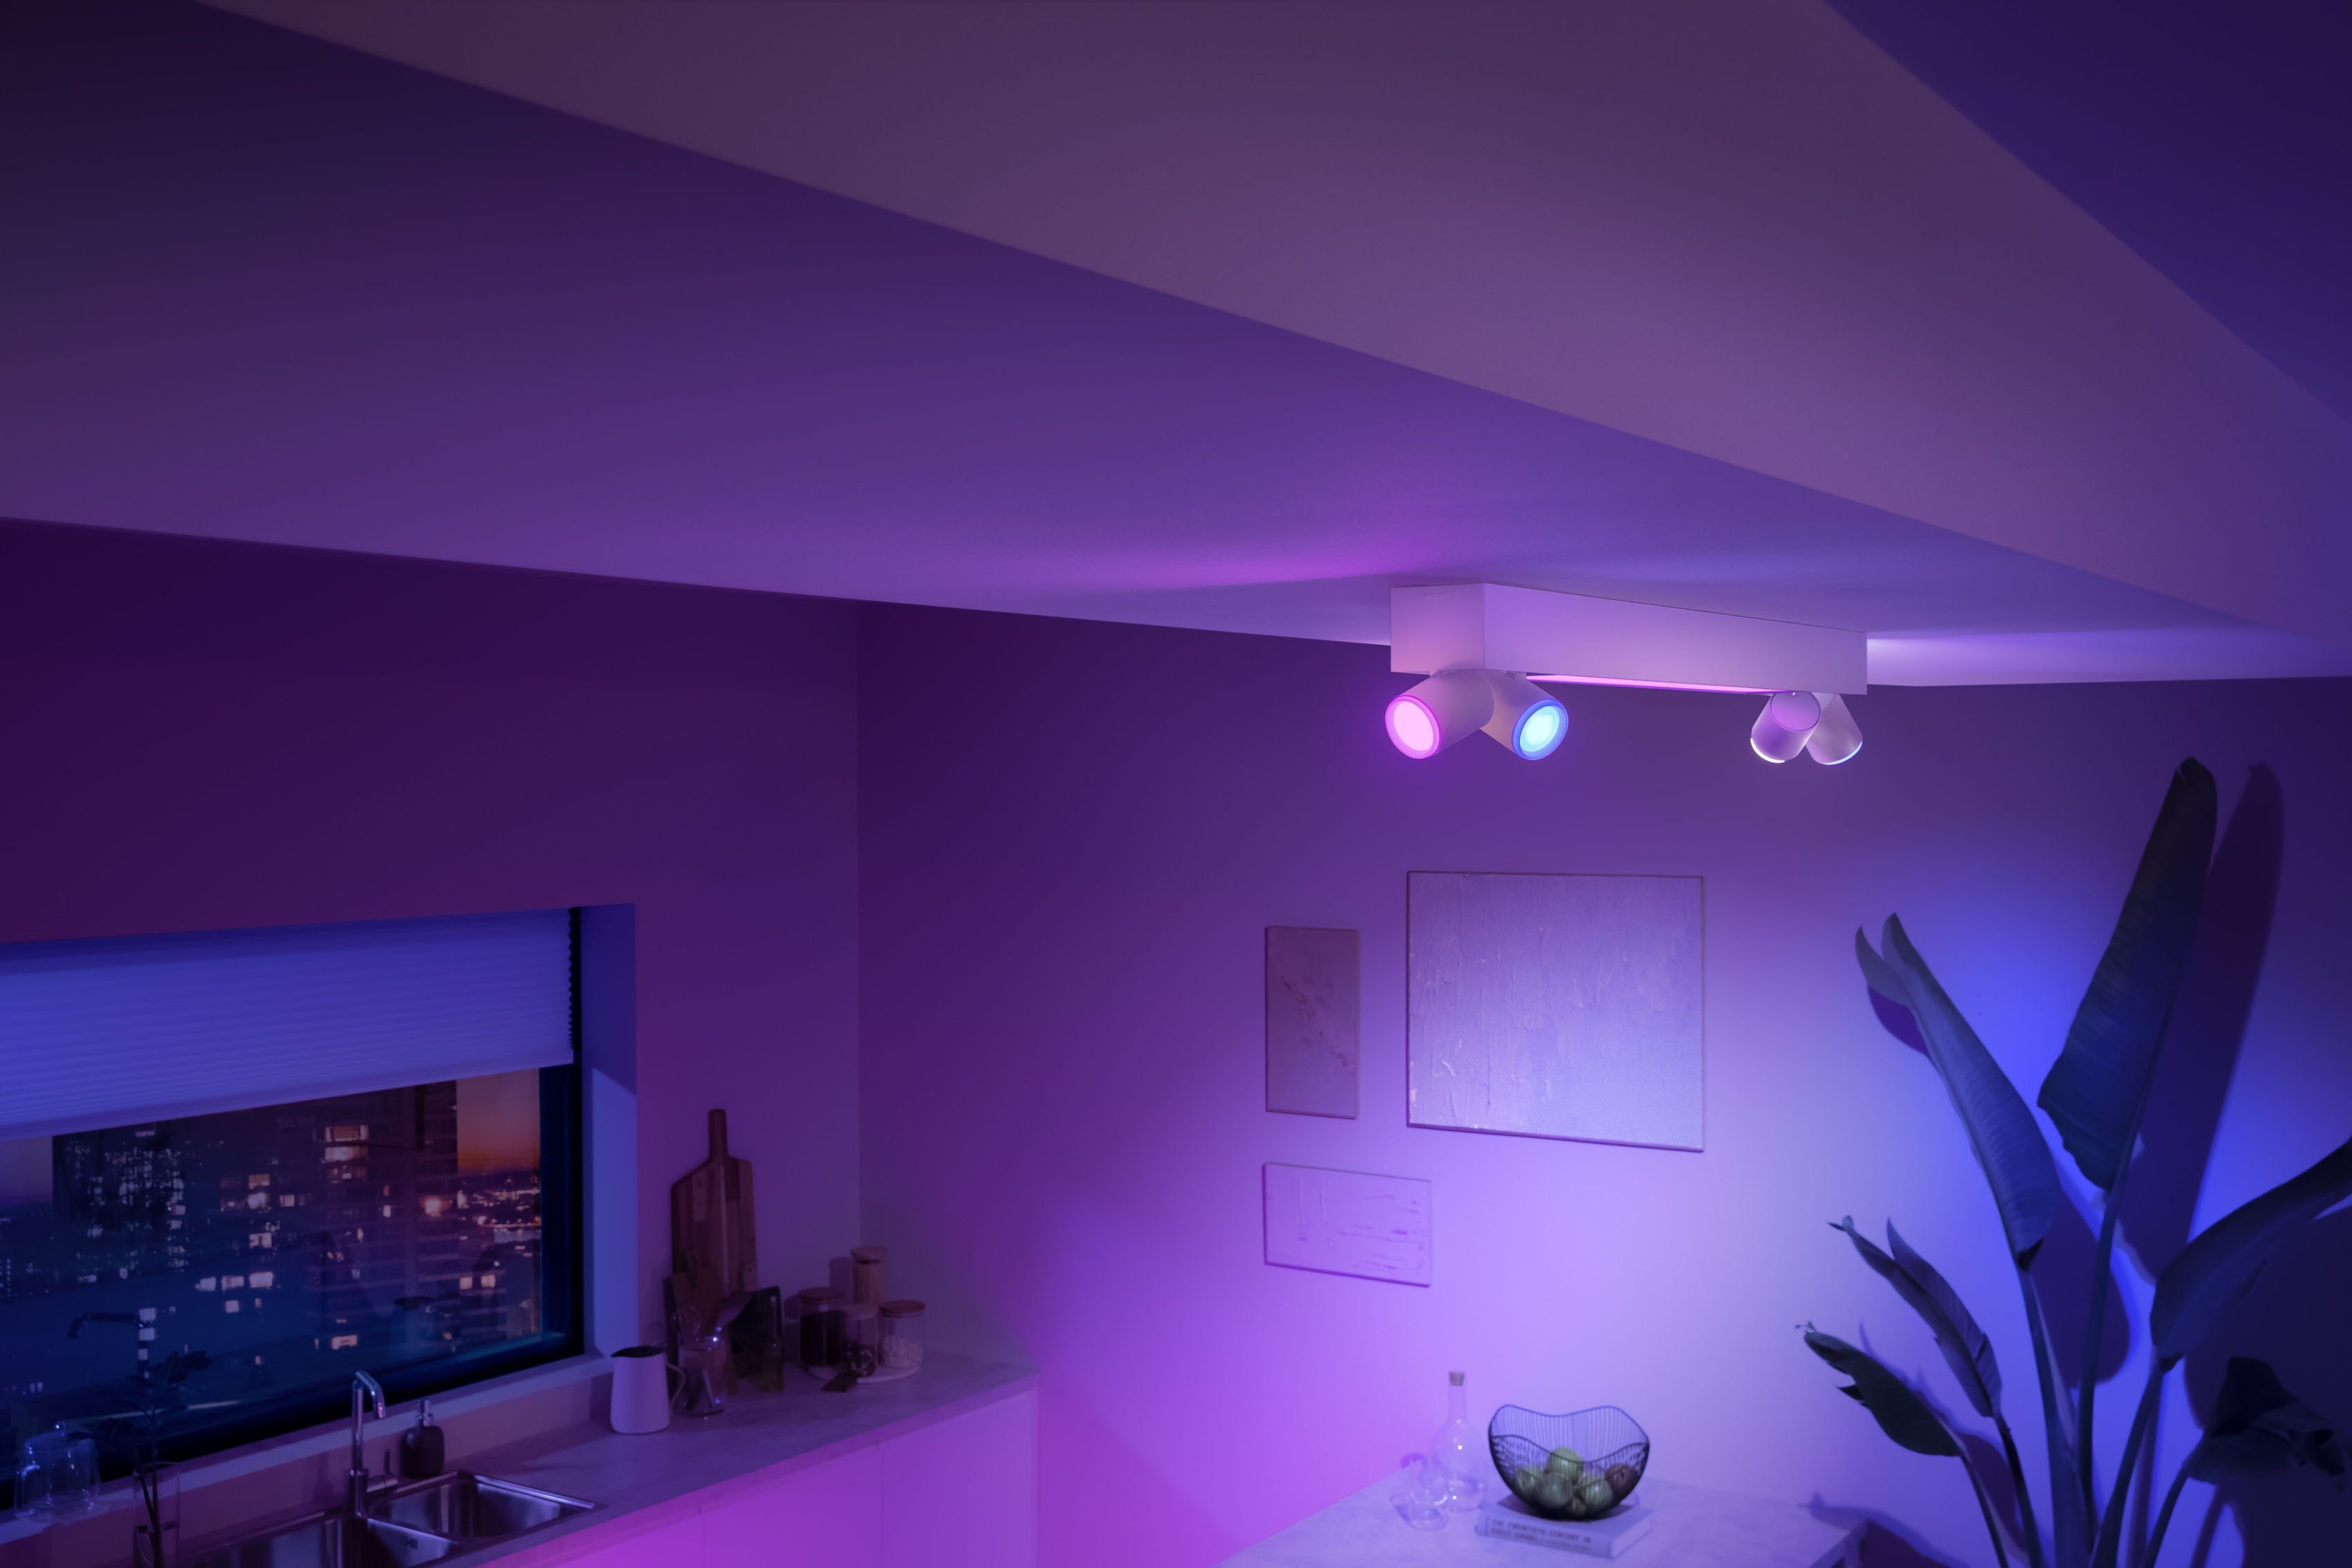 Philips LED Lampen Farbwechsler, App, der Hue Centris, Individ. Deckenspot anpassbar Lampeneinstellungen Hue LED wechselbar, mit einzeln